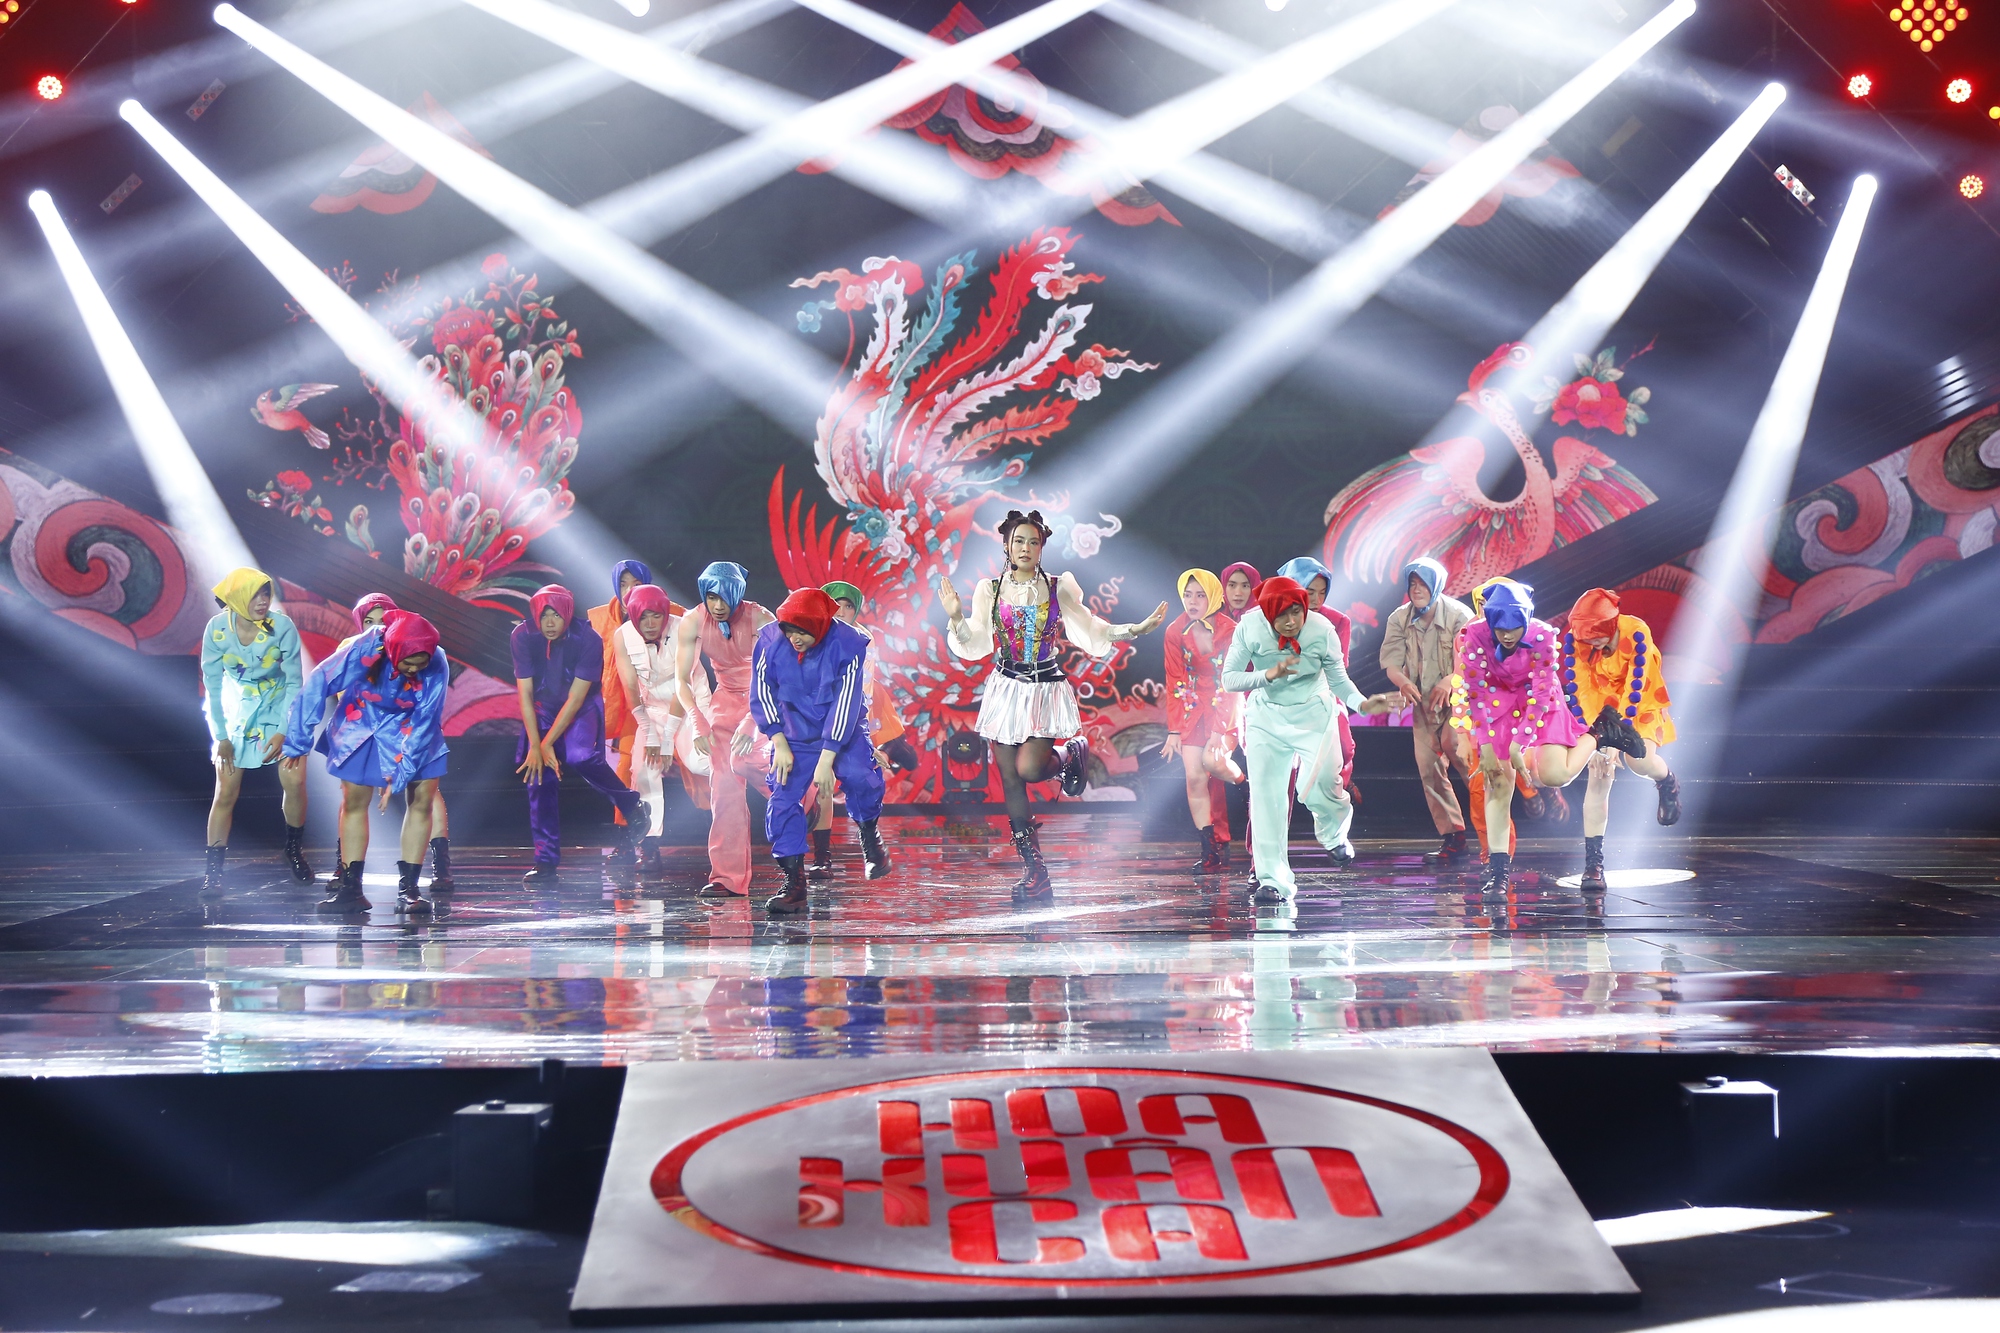 Mỹ Tâm, Tùng Dương, Đen Vâu khác lạ trong đại nhạc hội lần đầu xuất hiện trên VTV dịp Tết - Ảnh 7.